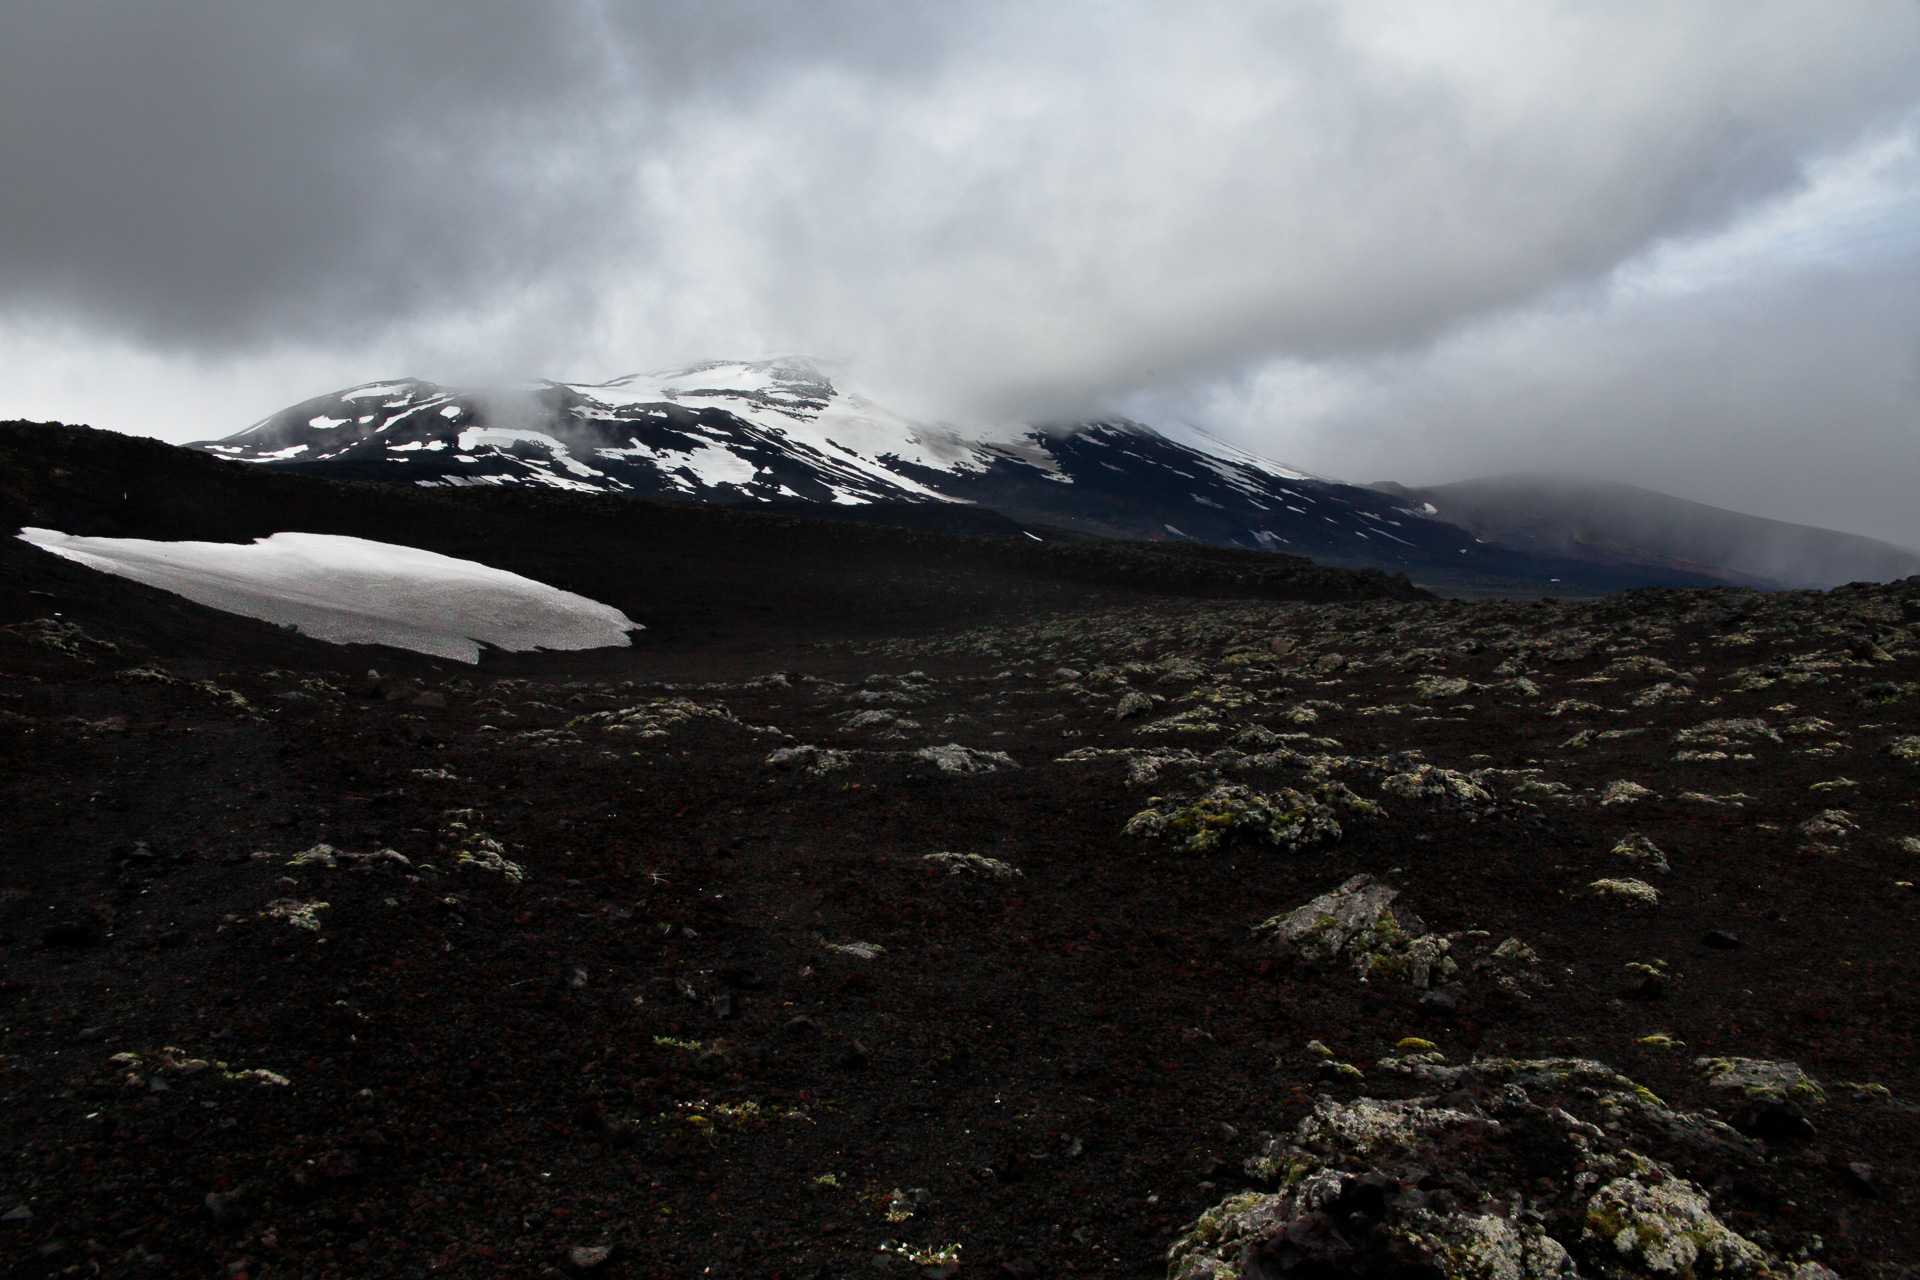 Die FOTOFÜCHSE Wunschorte. Im Hochland Islands dem Vulkan Hekla einen Besuch abstatten und hoffen, dass die gute Dame ihre Wolkenkrone nicht am Haupte trägt.